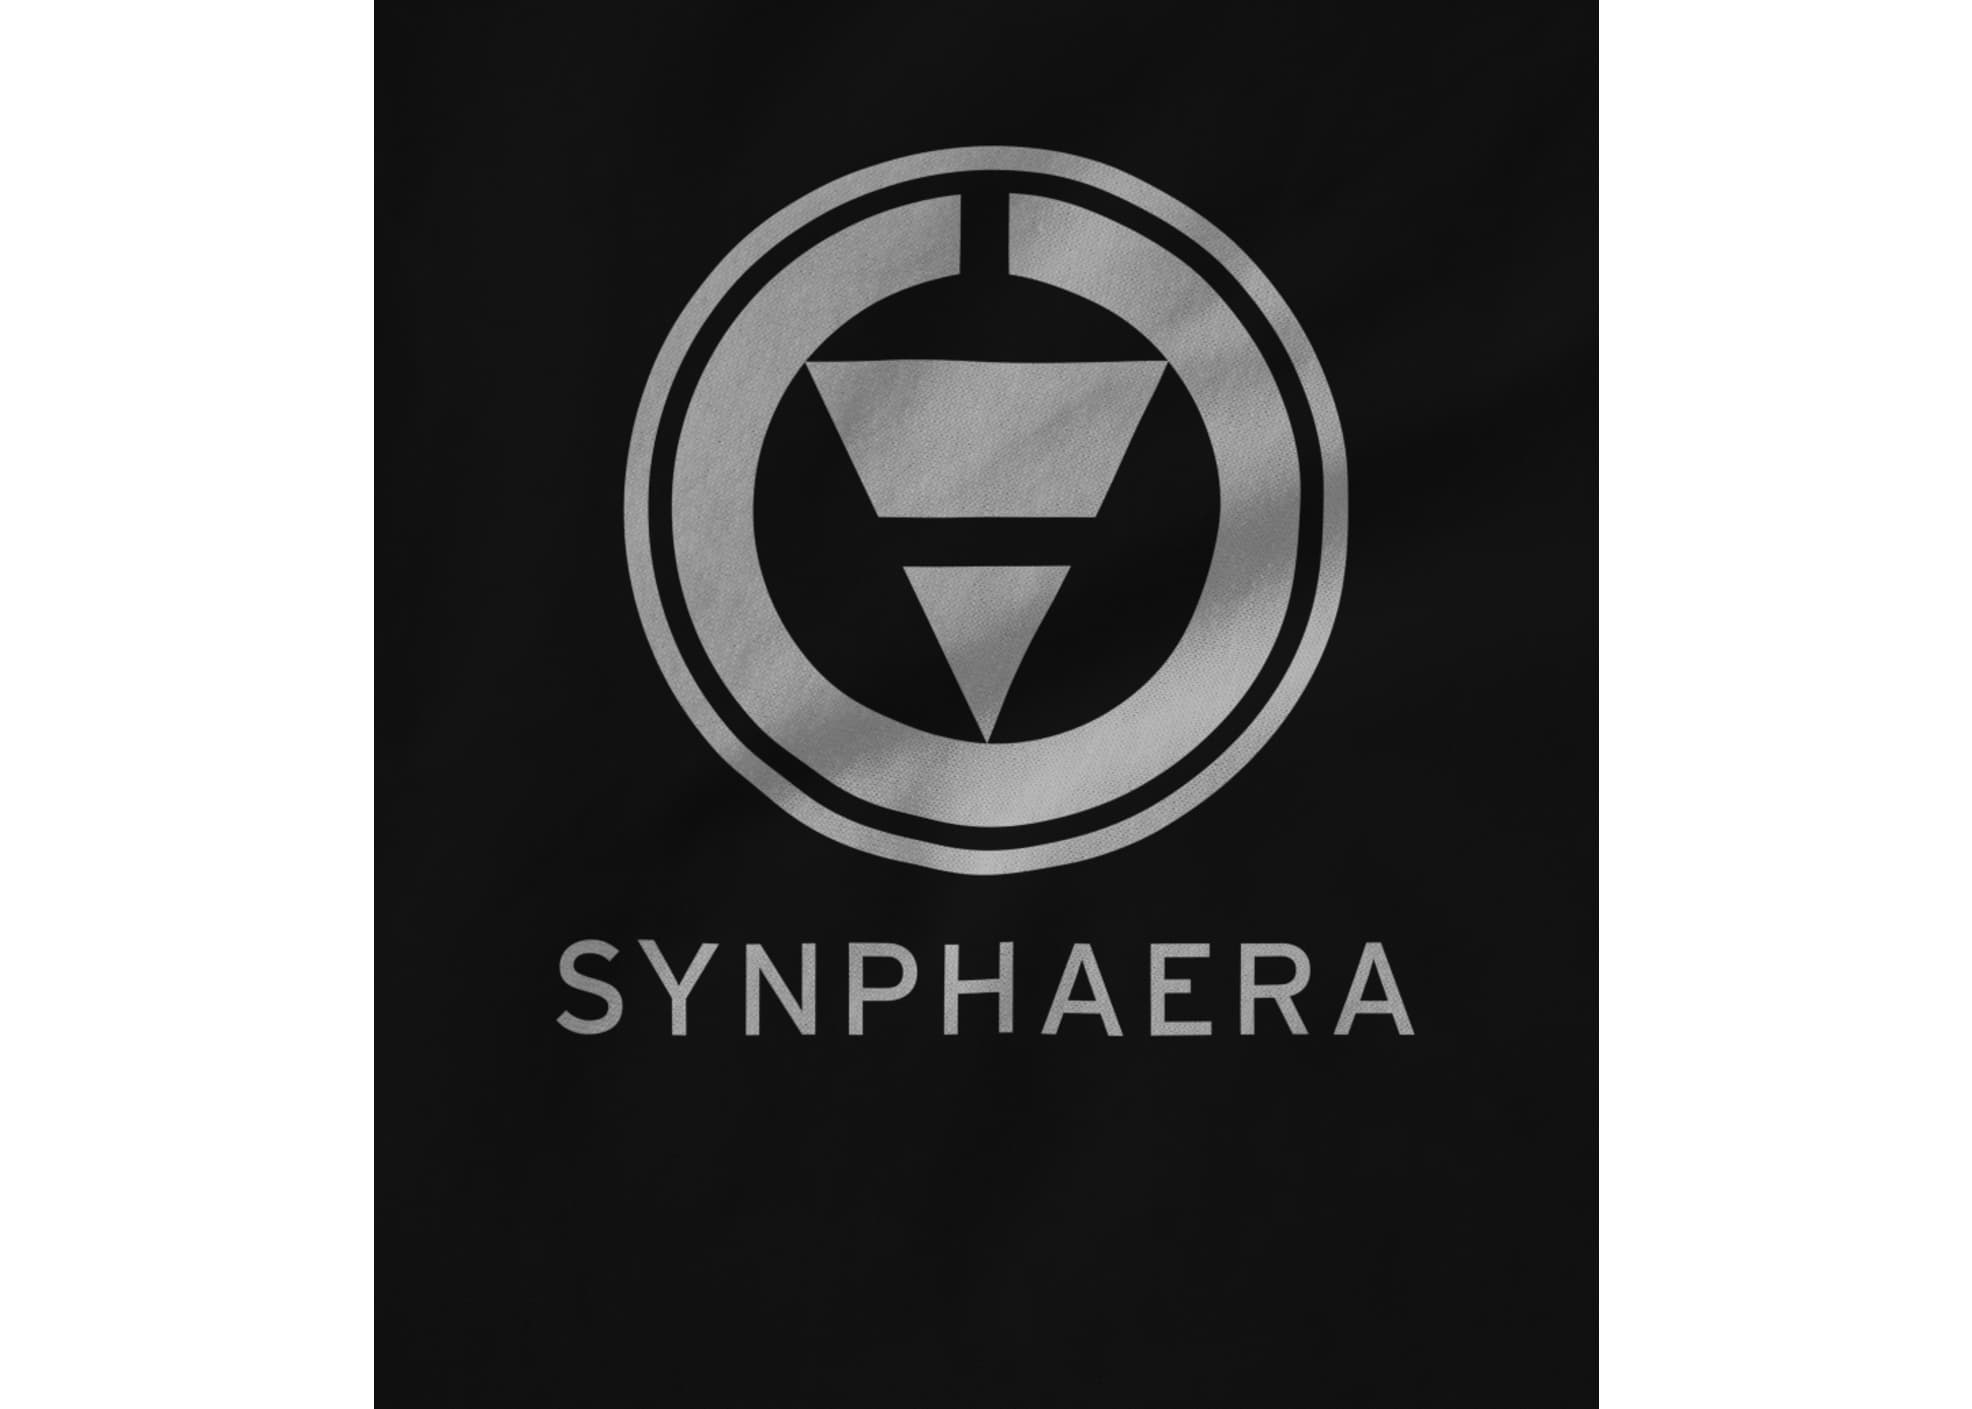 Synphaera original design official 1611772666